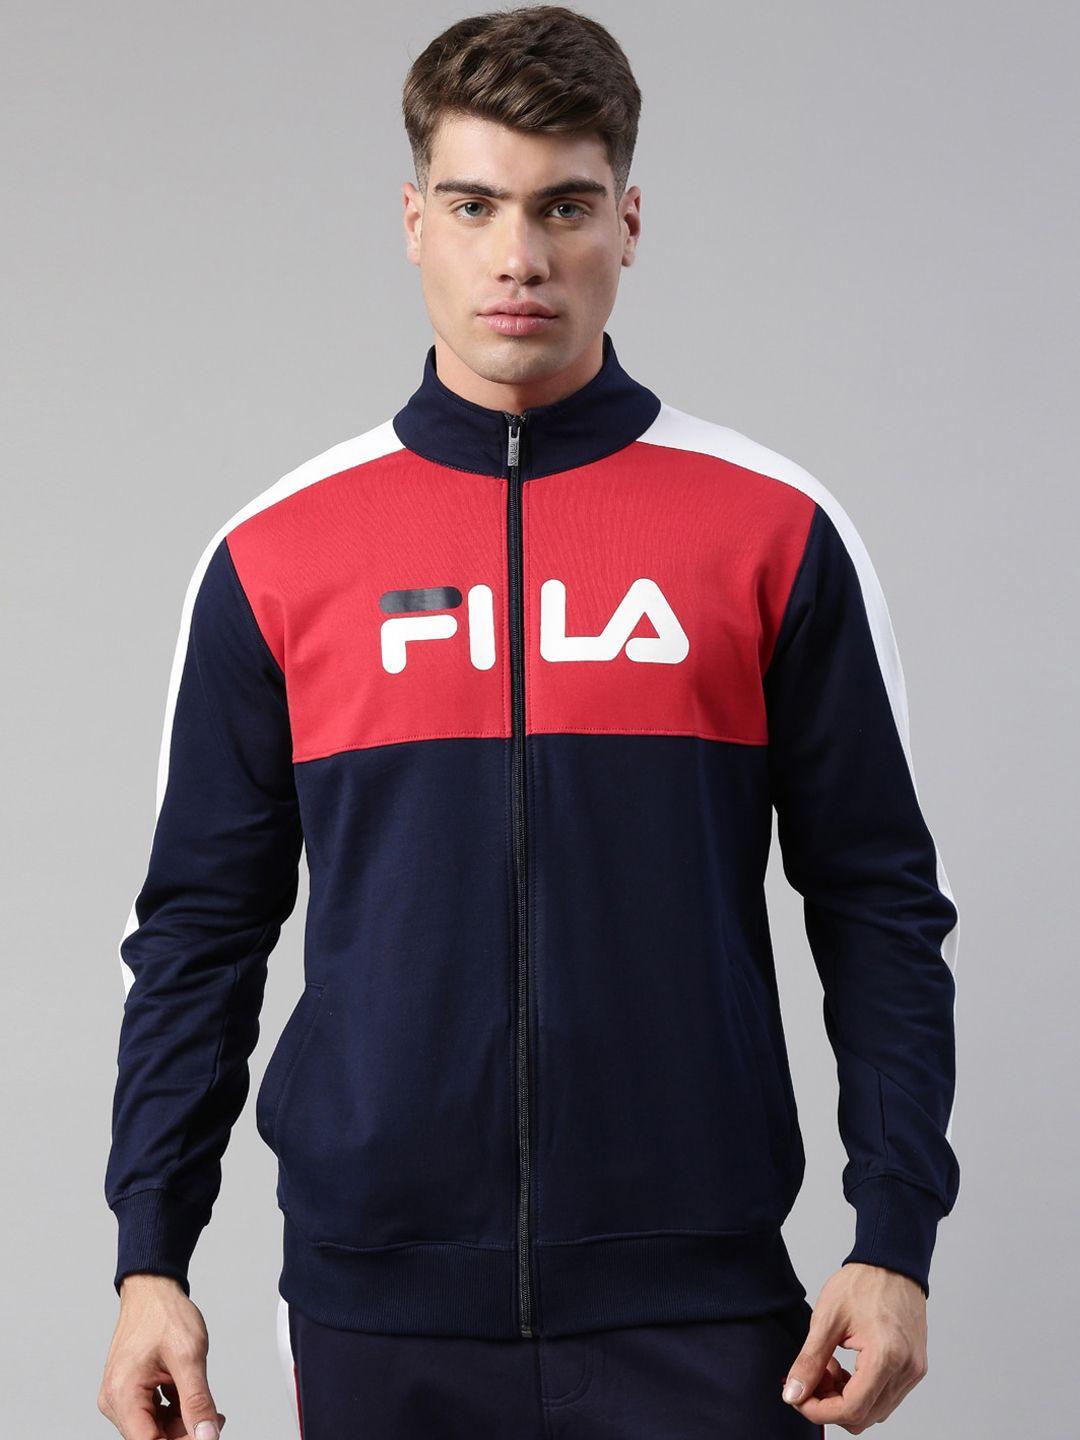 fila-men-blue-red-colourblocked-junaid-jkt-sporty-jacket